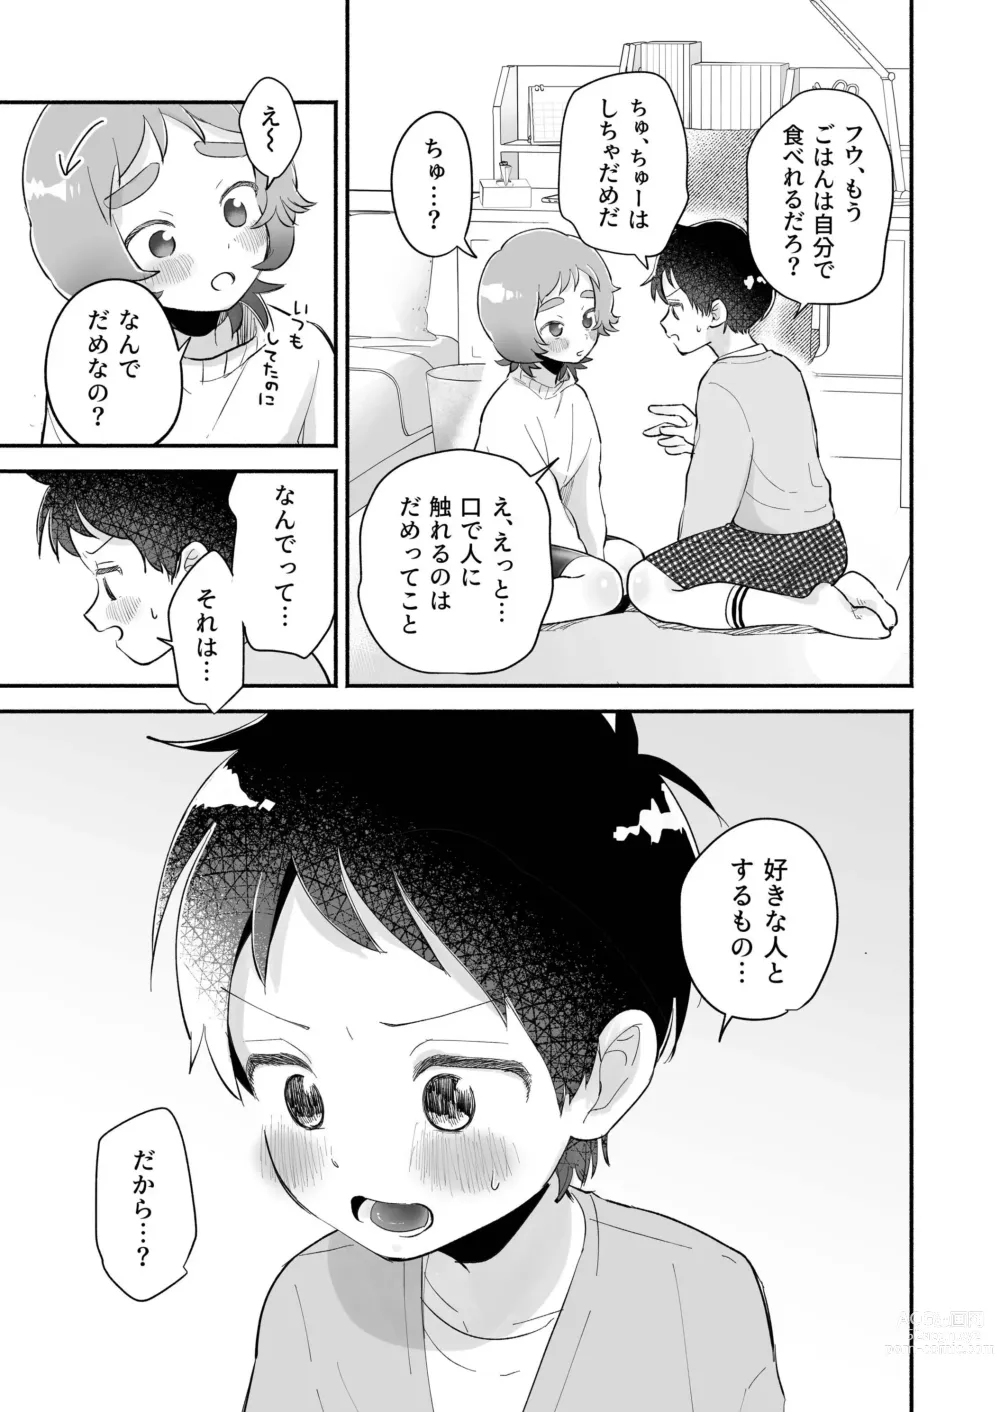 Page 9 of doujinshi Riku to Fuu Akachan Dekireba Kazoku ni Nareru no ka na